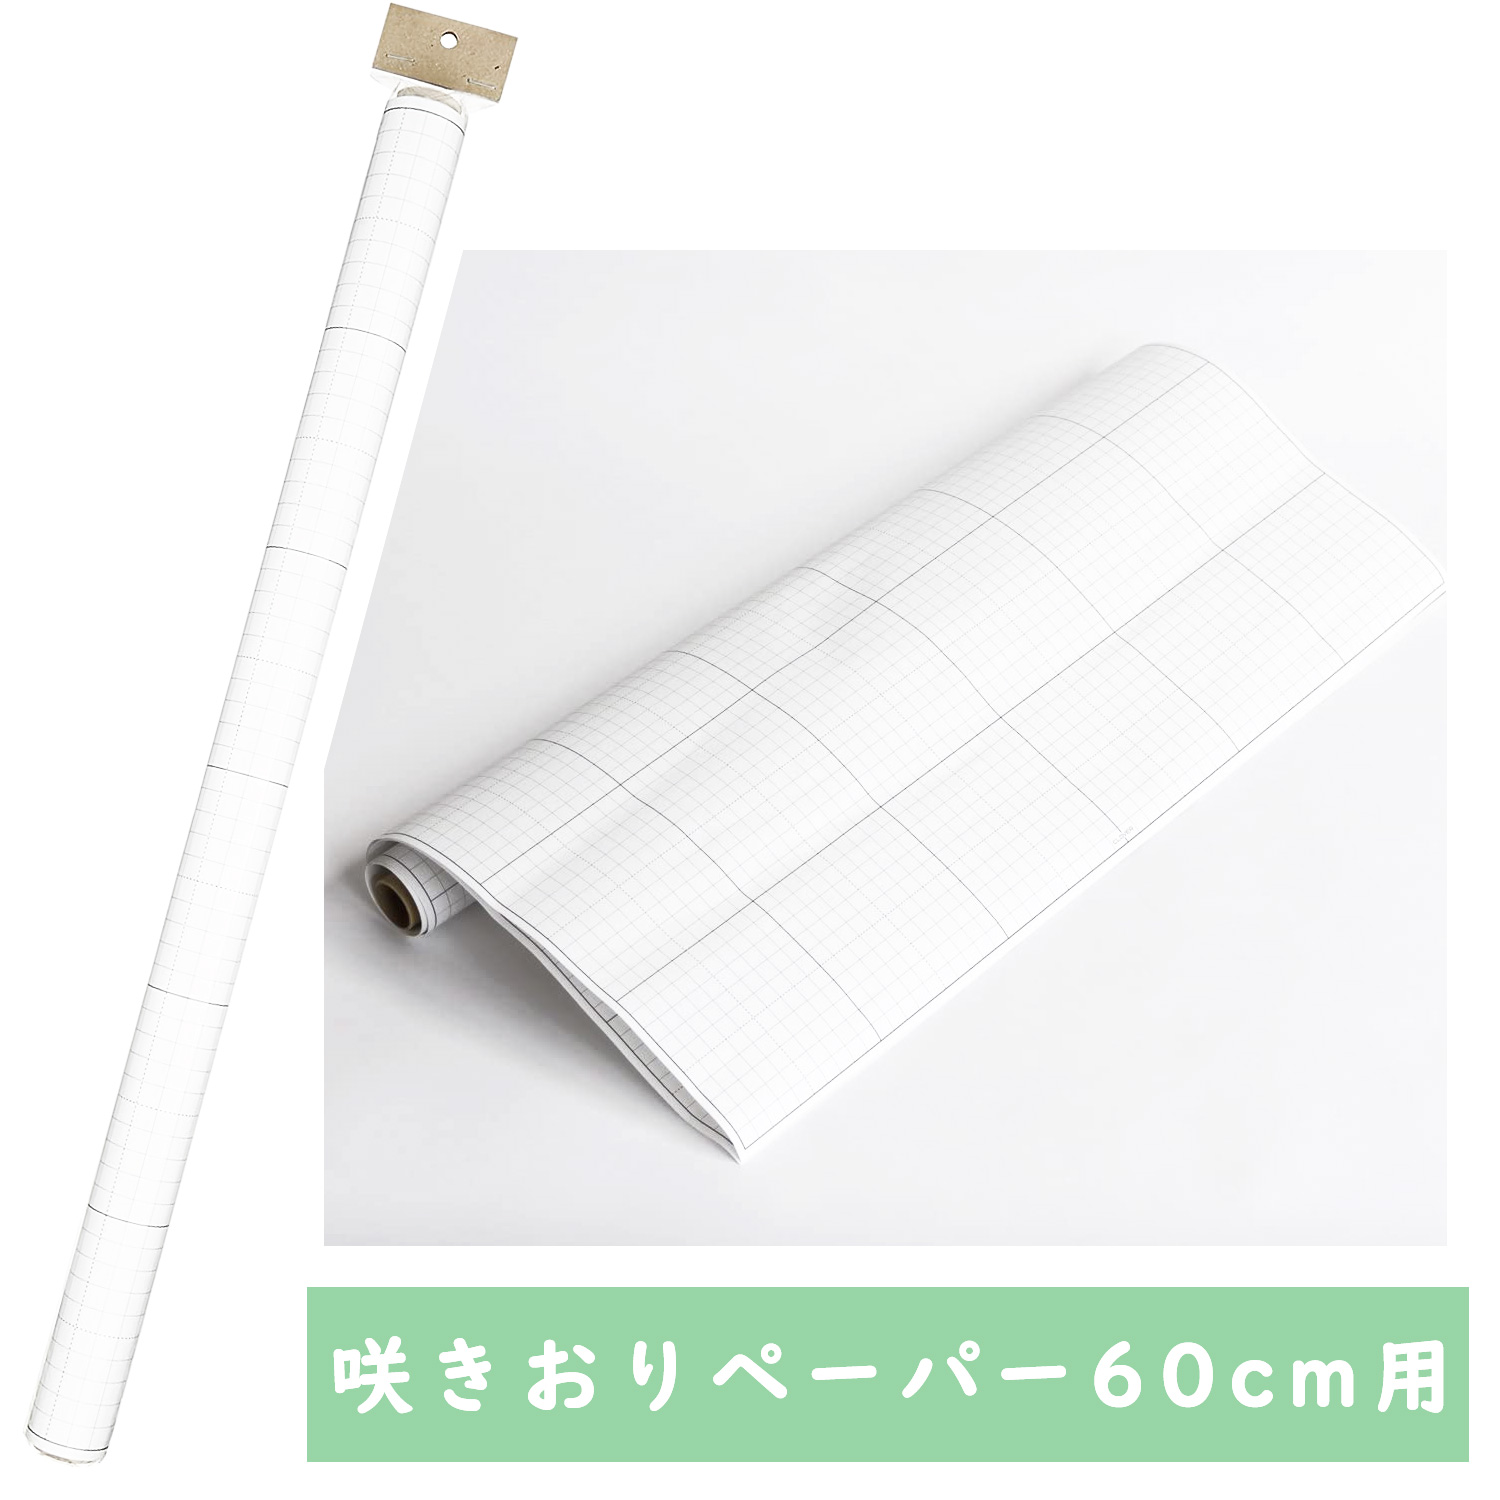 CL58-126 Sakiori Weaving Loom Paper 2 sheets [60cm] 610 x 810mm (pcs)